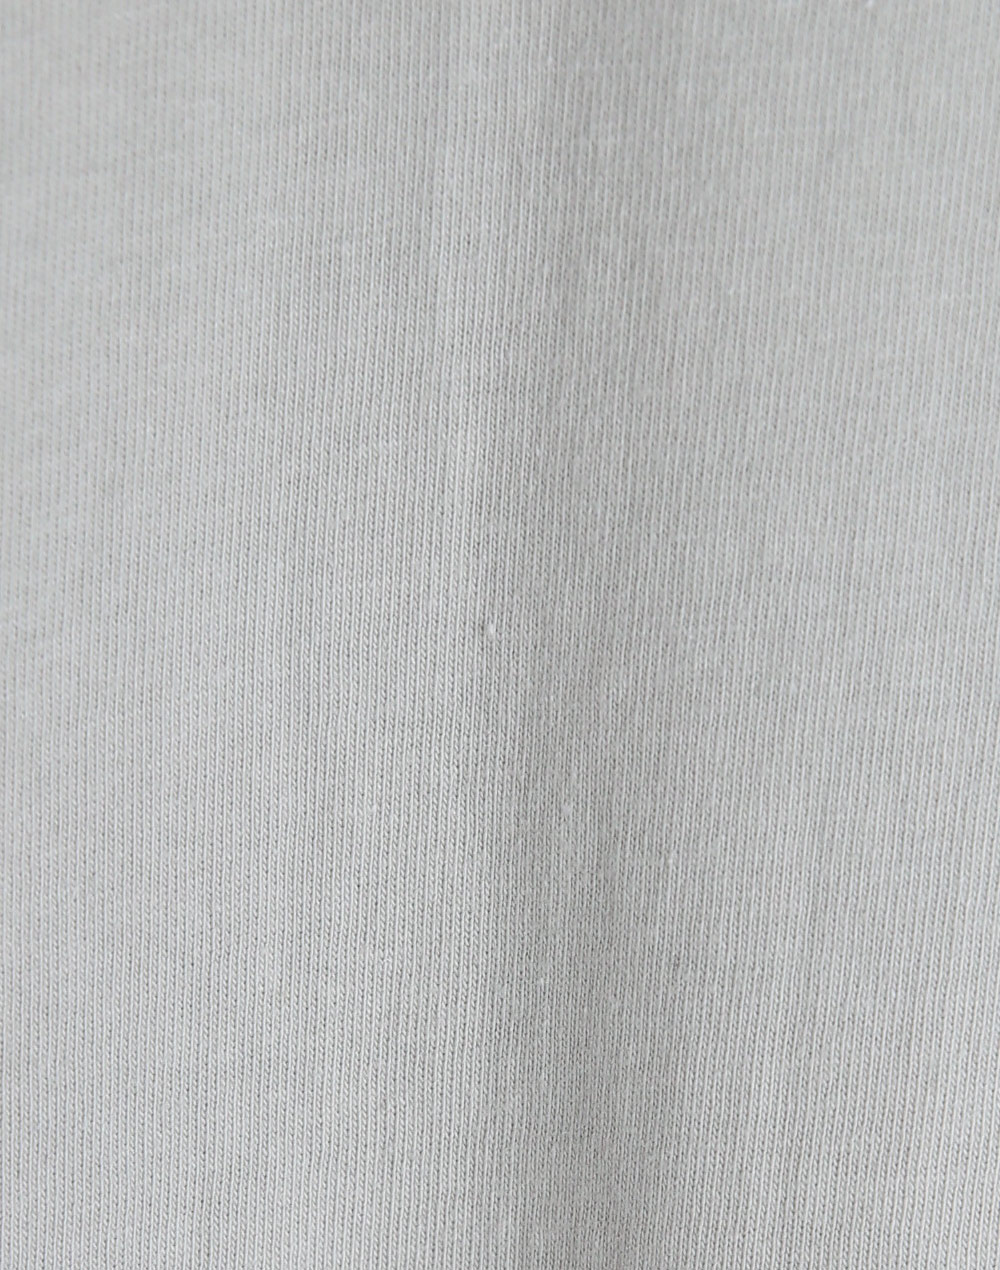 ラインデザインTシャツ・t277693（トップス/Tシャツ）| aiko.01234 | 東京ガールズマーケット